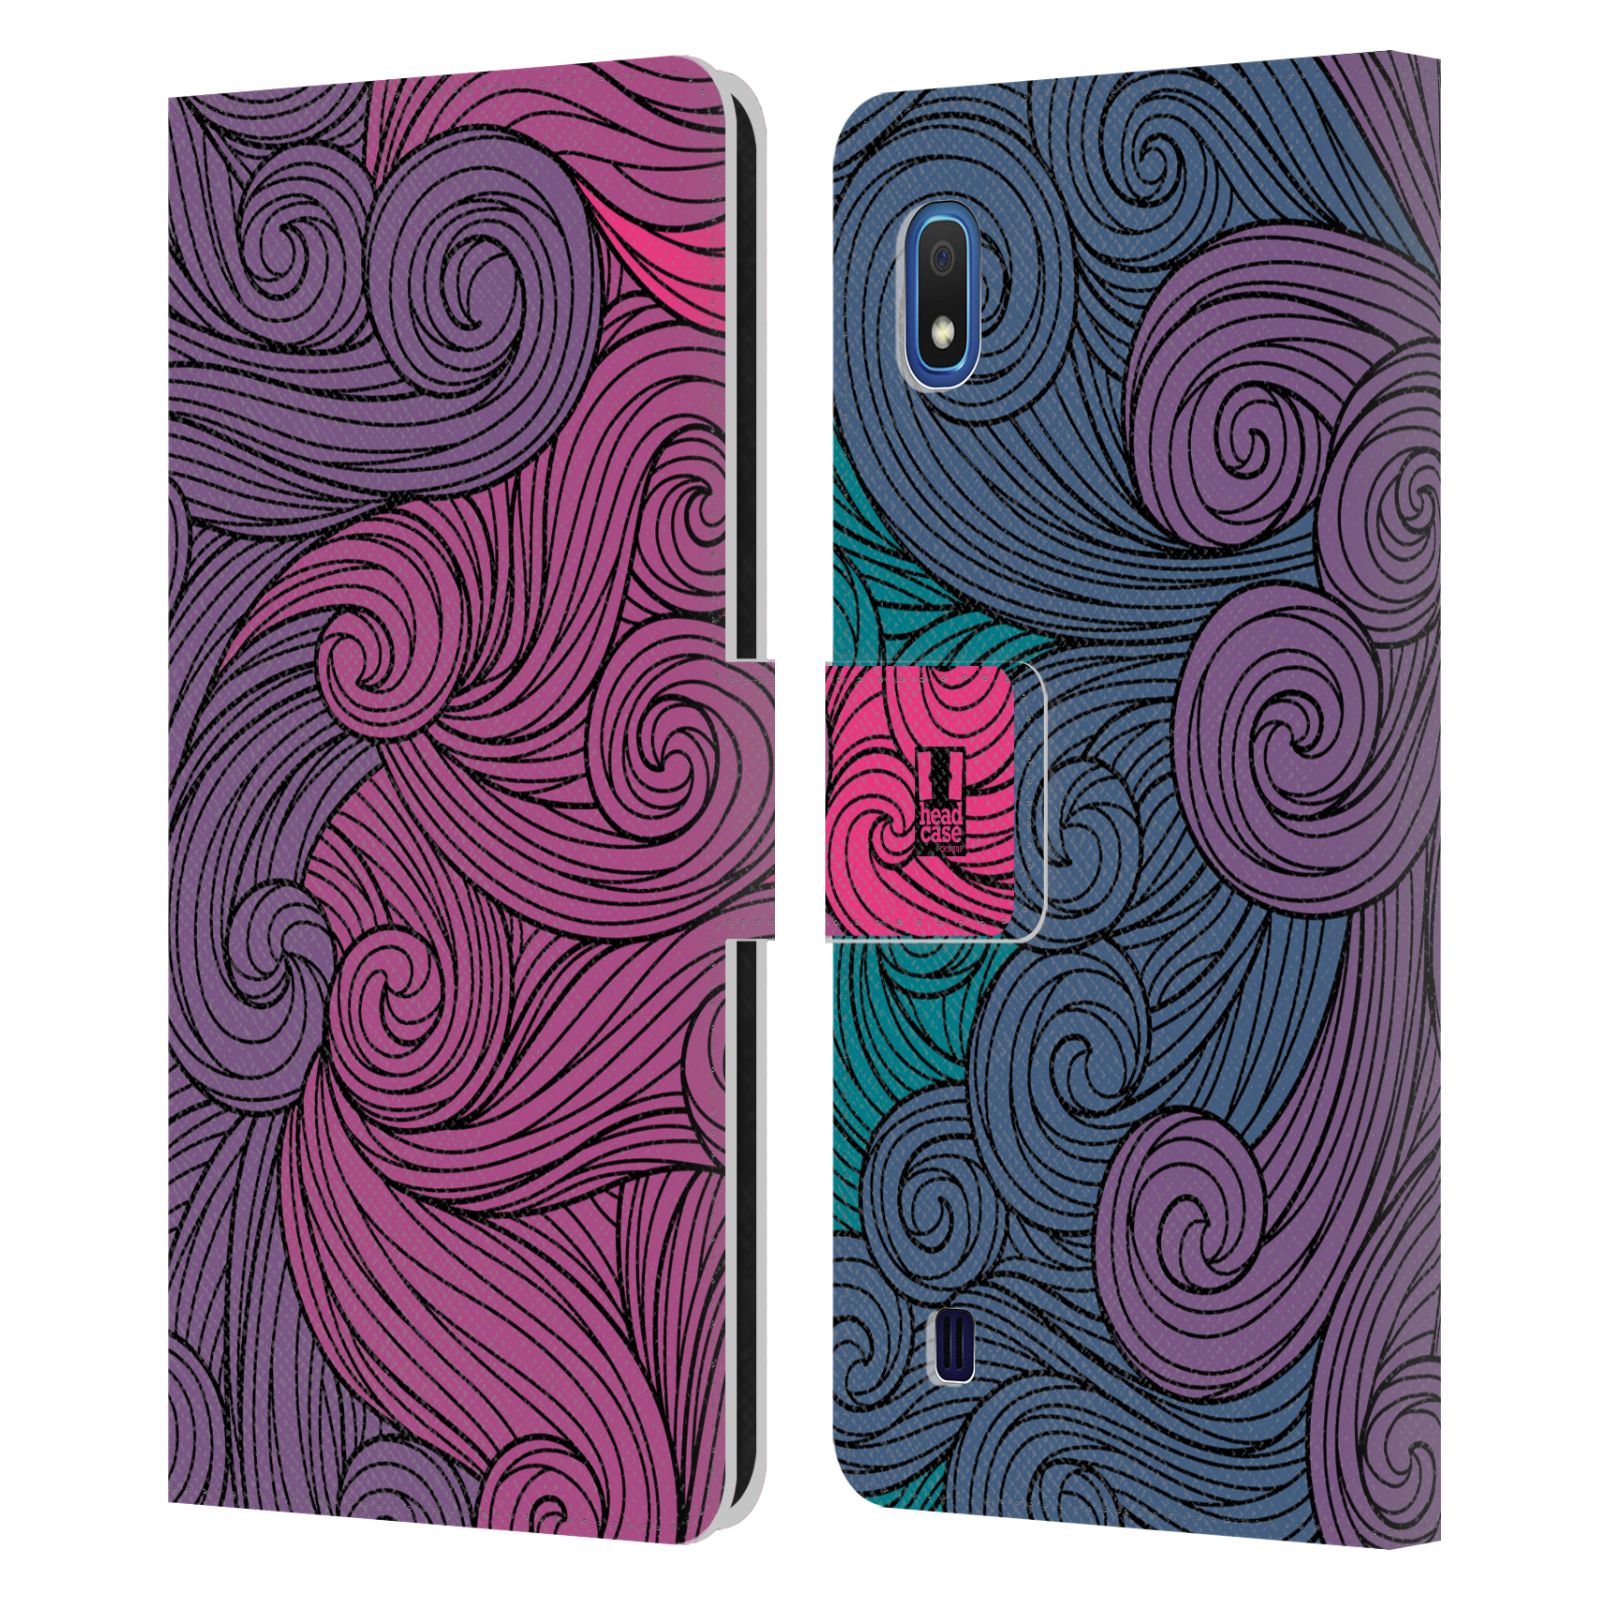 Pouzdro na mobil Samsung Galaxy A10 barevné vlny růžová a modrá